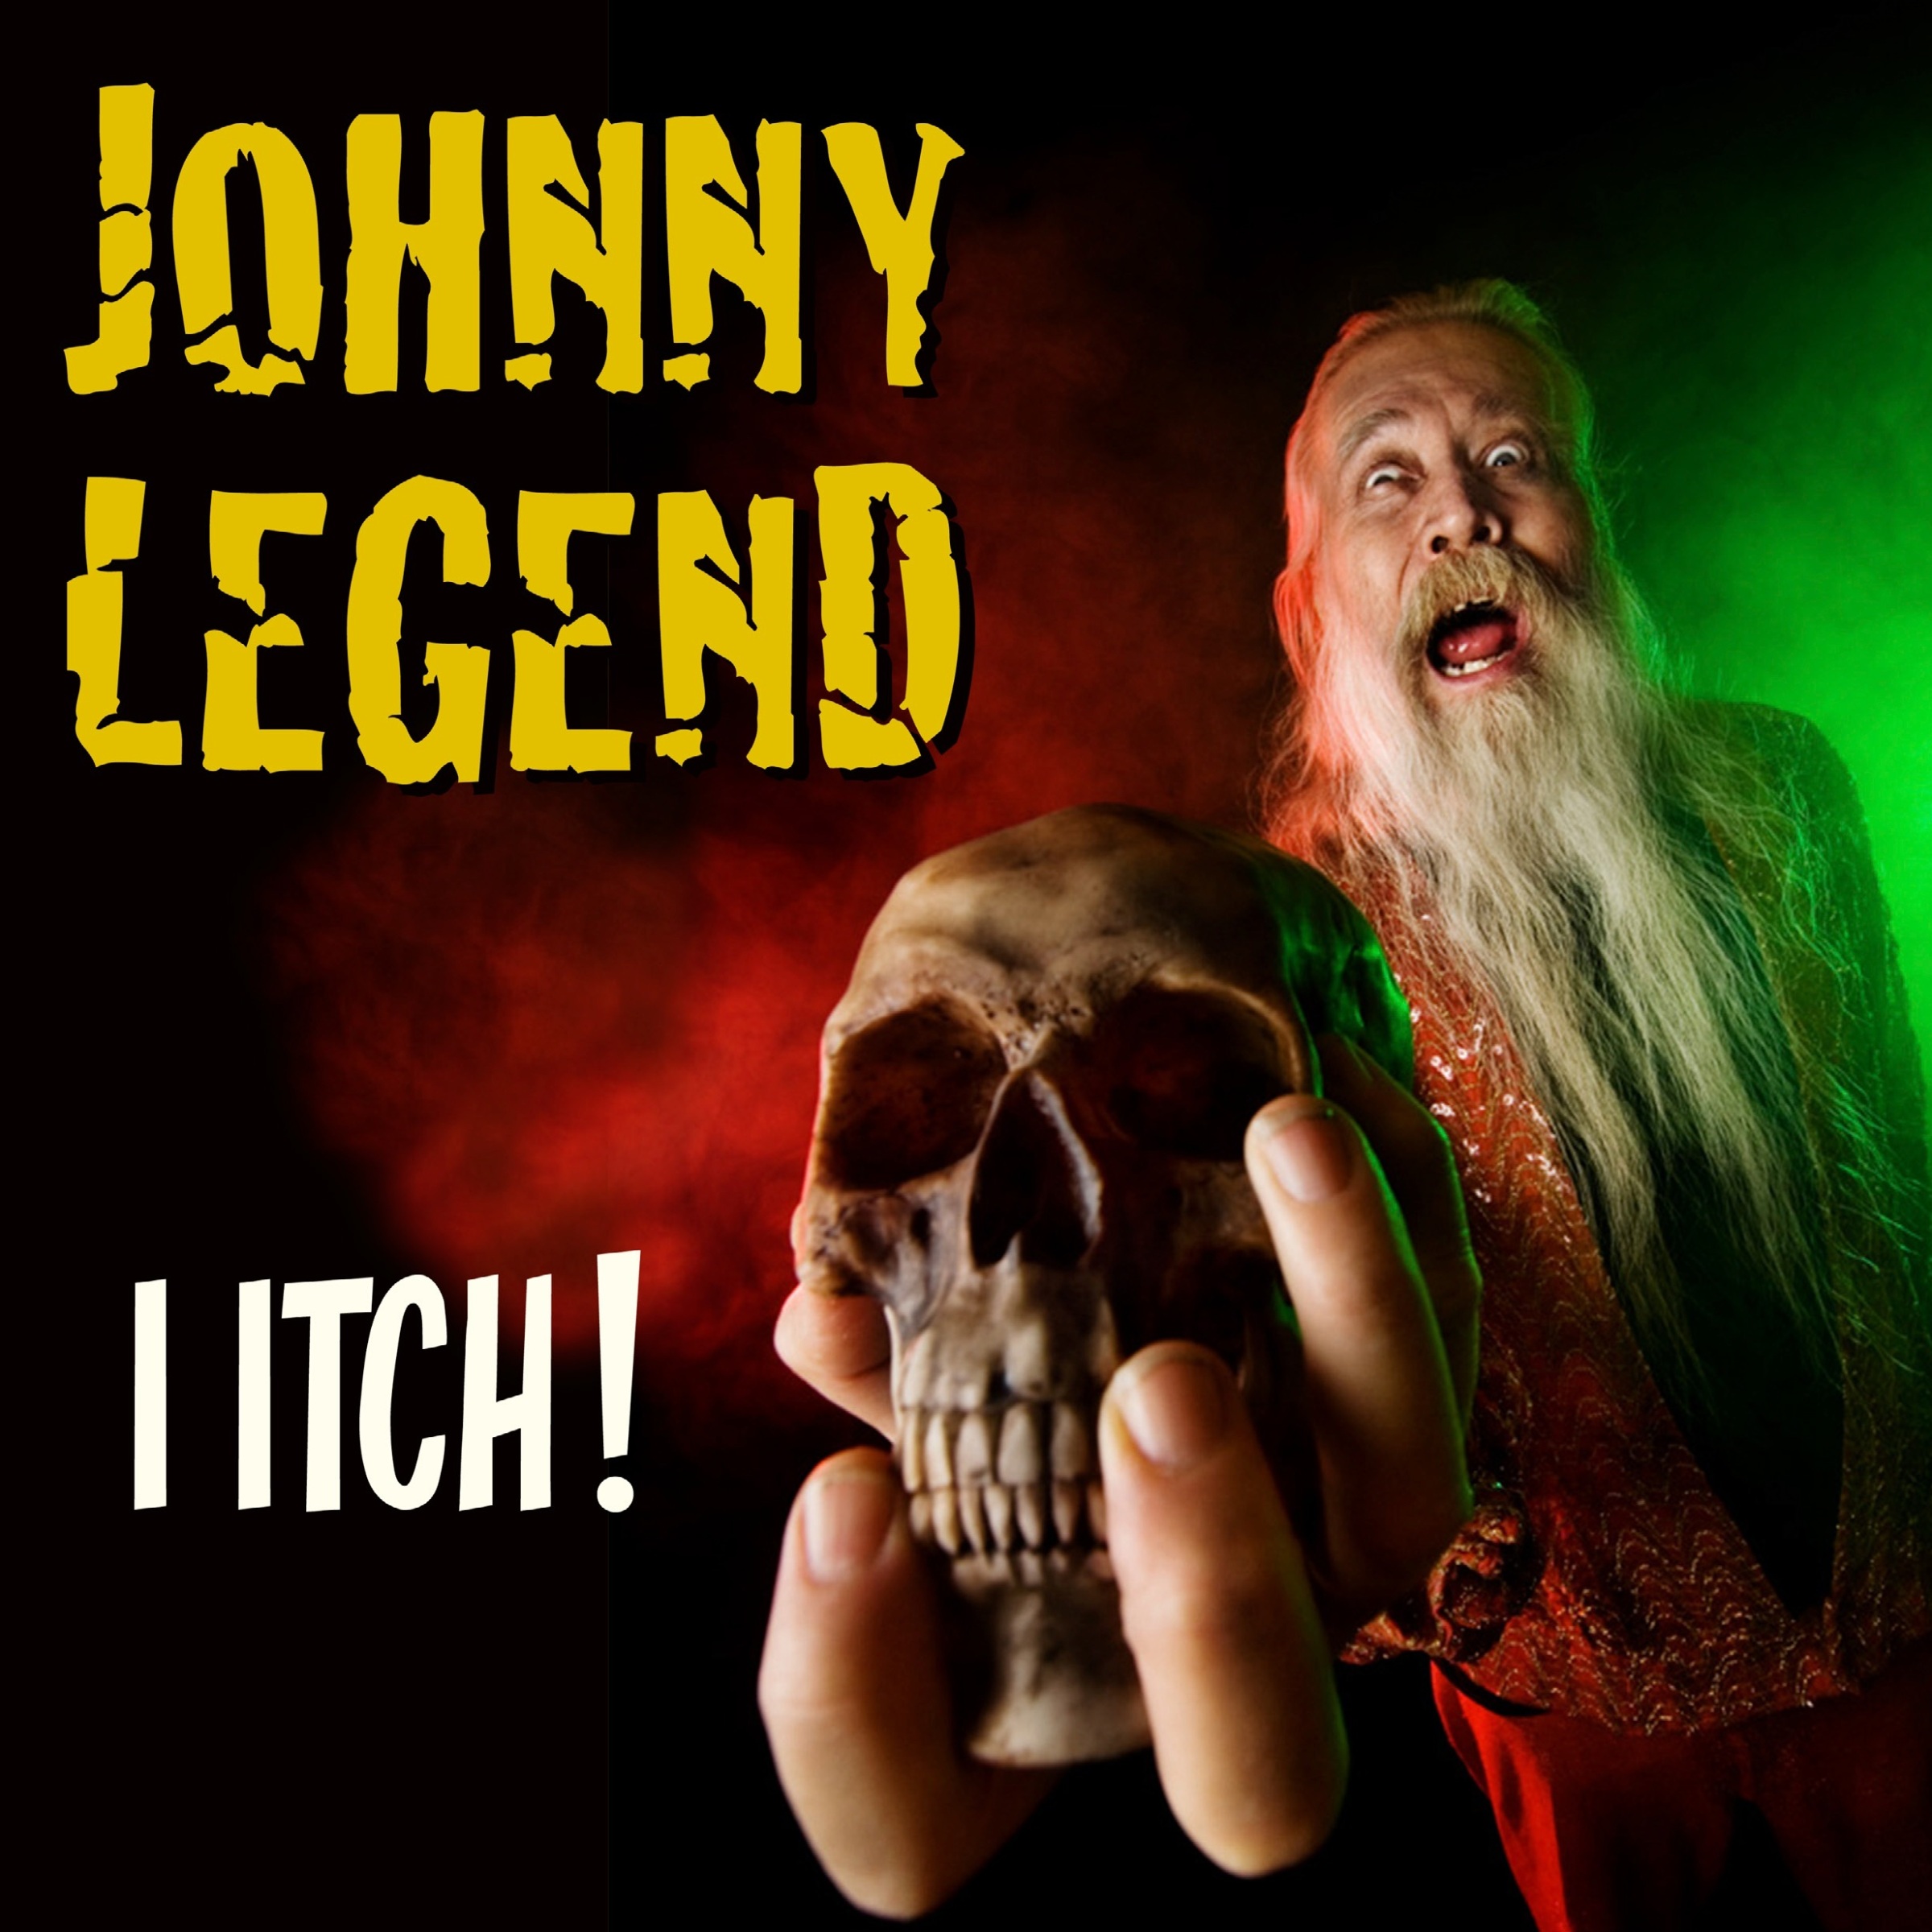 Johnny Legend - I Itch